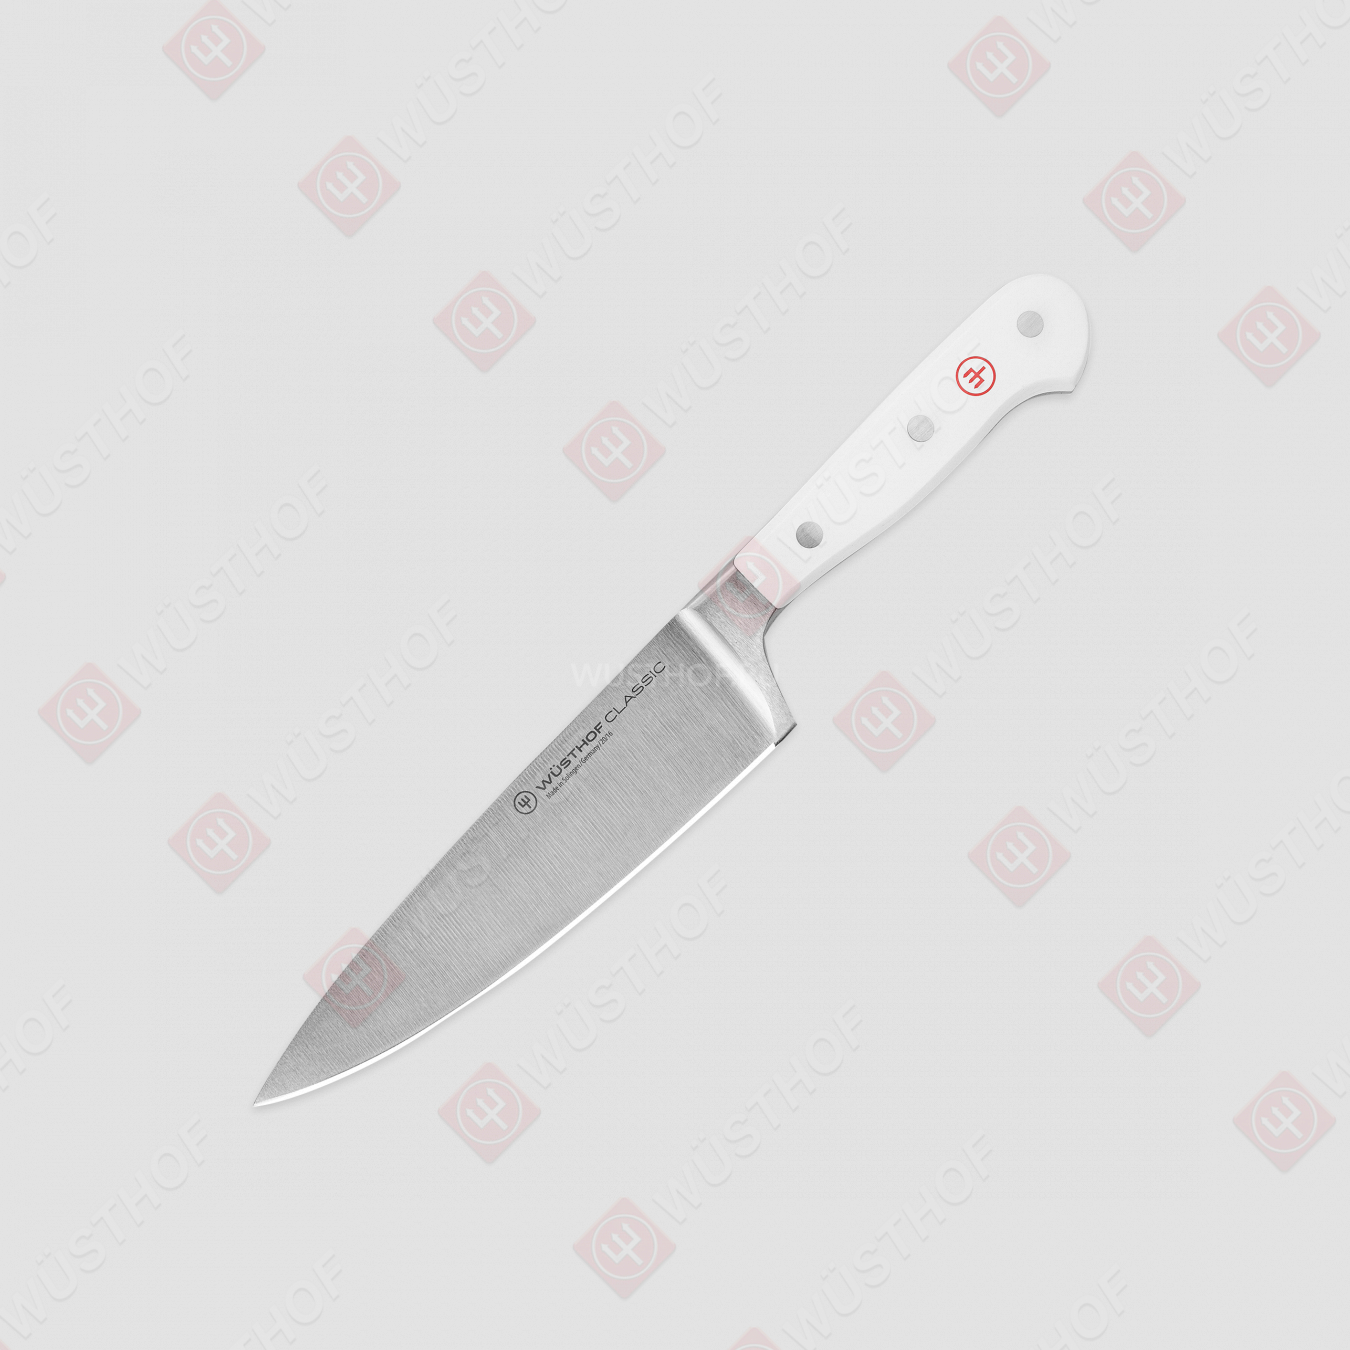 Профессиональный поварской кухонный нож «Шеф» 16 см, серия White Classic, WUESTHOF, Золинген, Германия